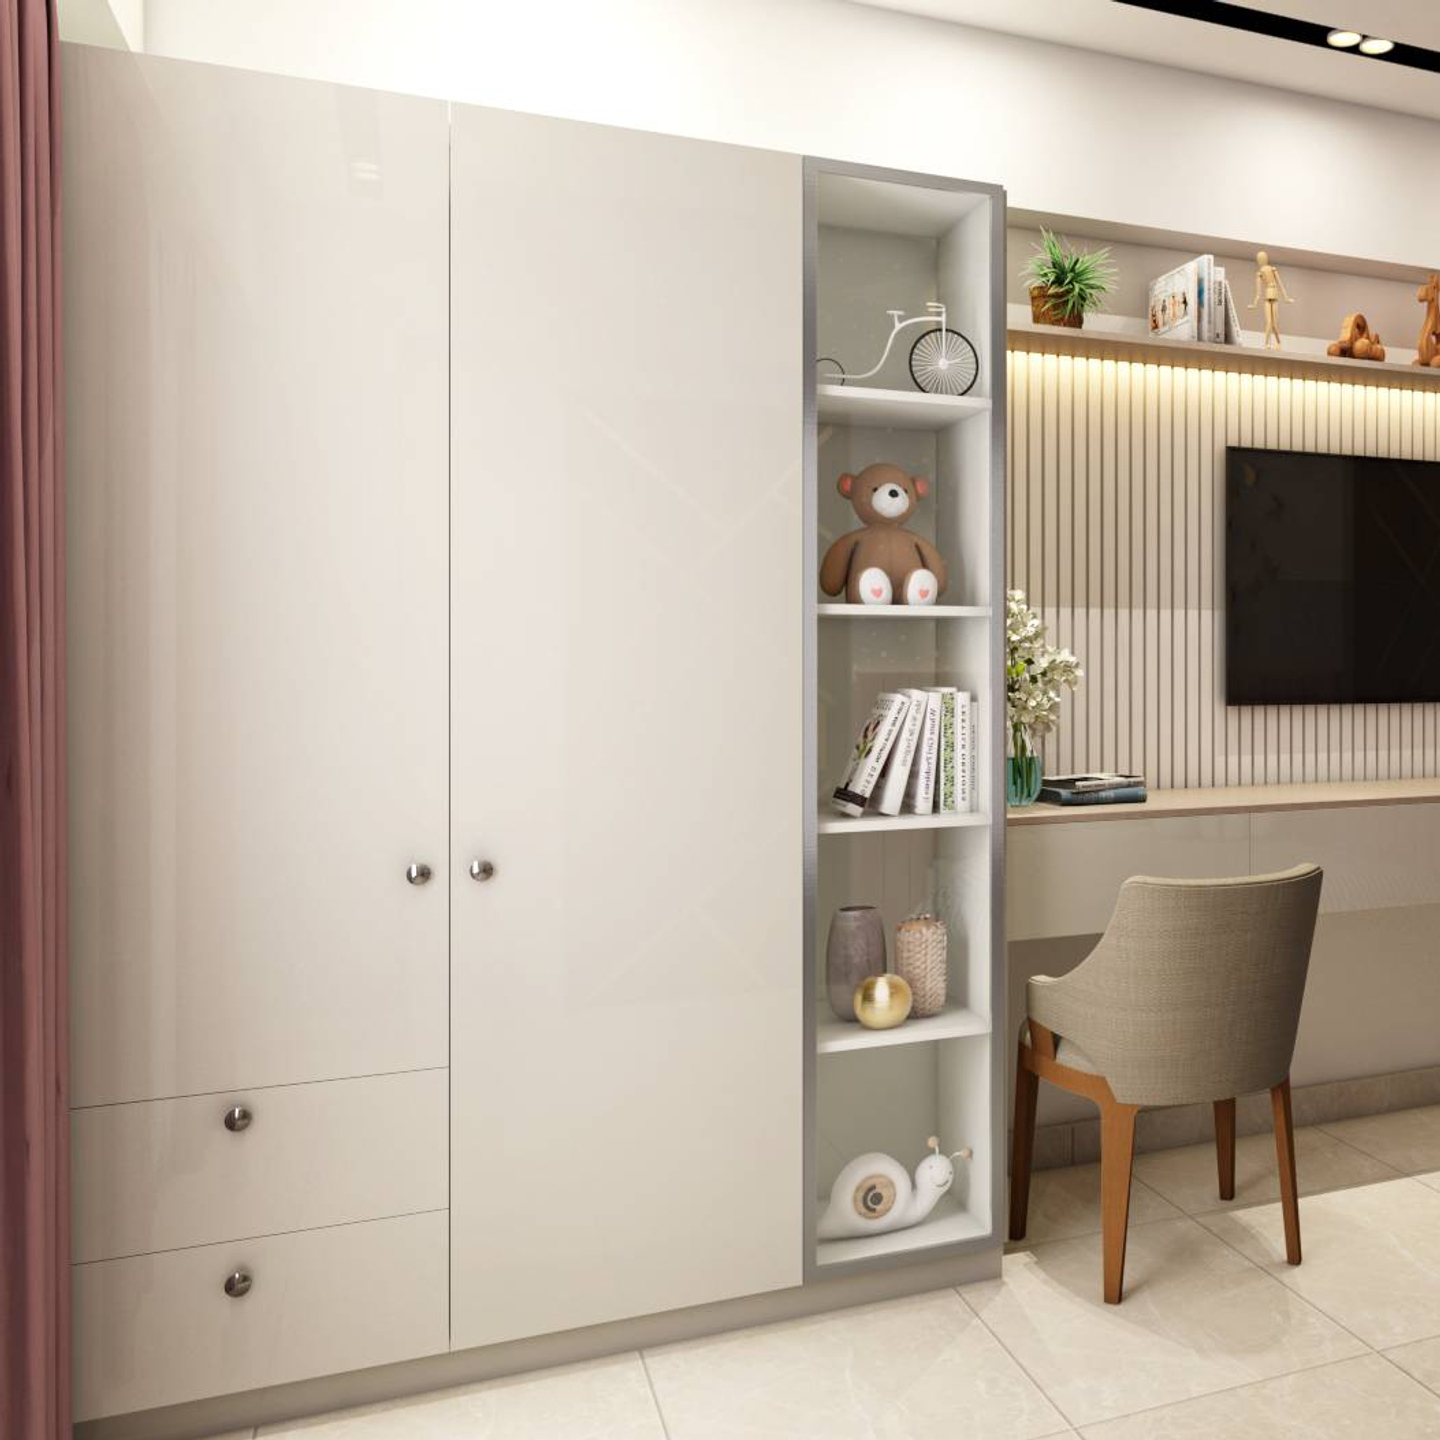 2-Door Swing Wardrobe Design With Open Shelves - Livspace